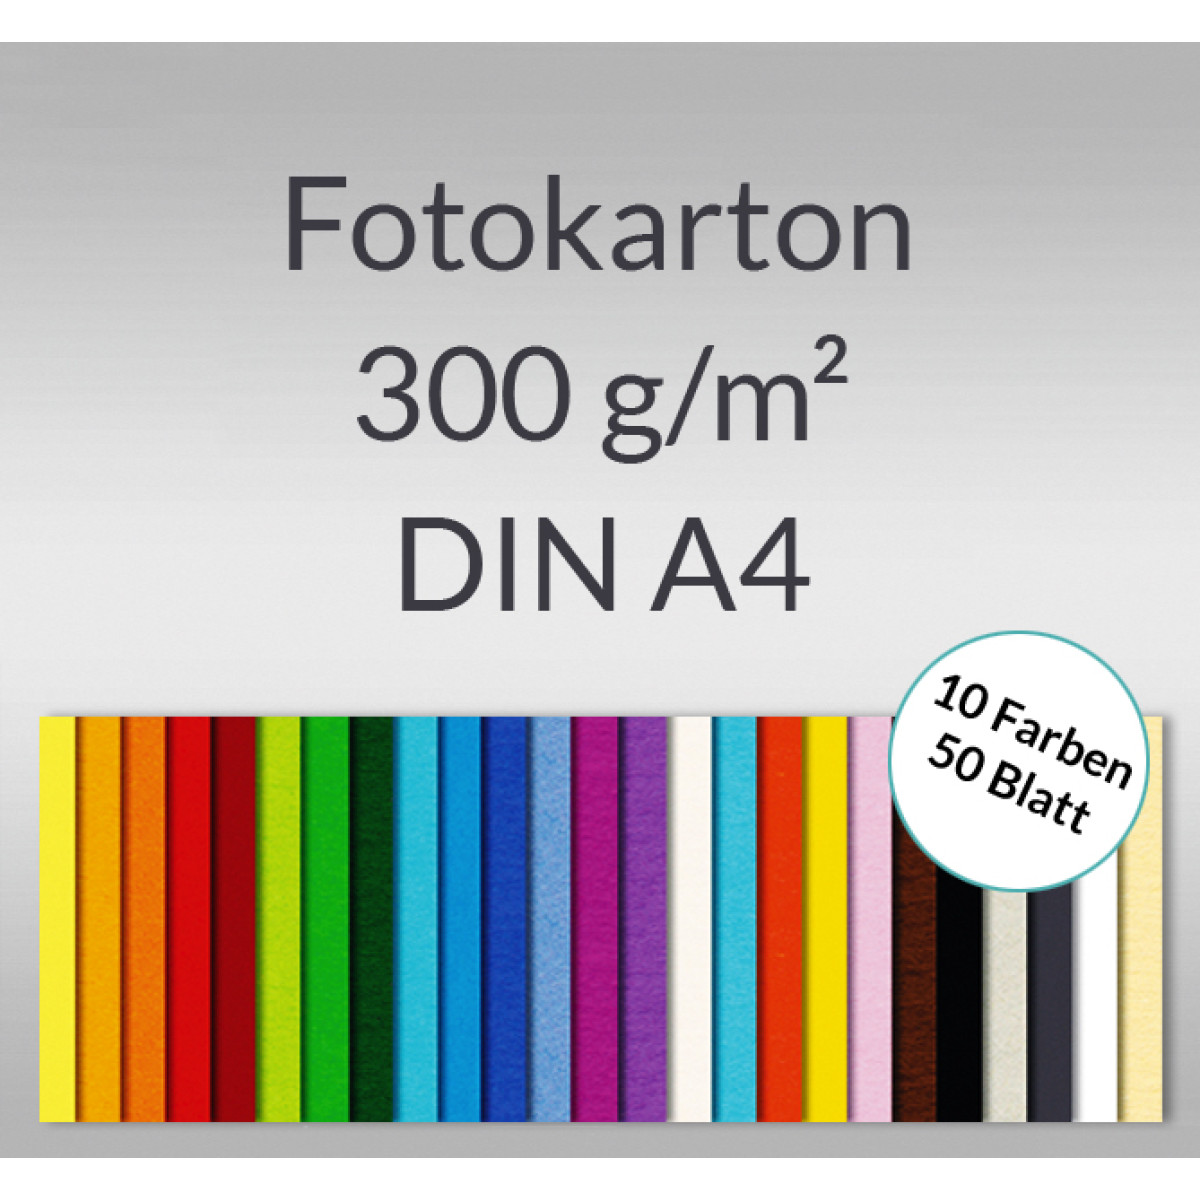 Fotokarton DIN A4 - 50 Blatt in 10 Farben